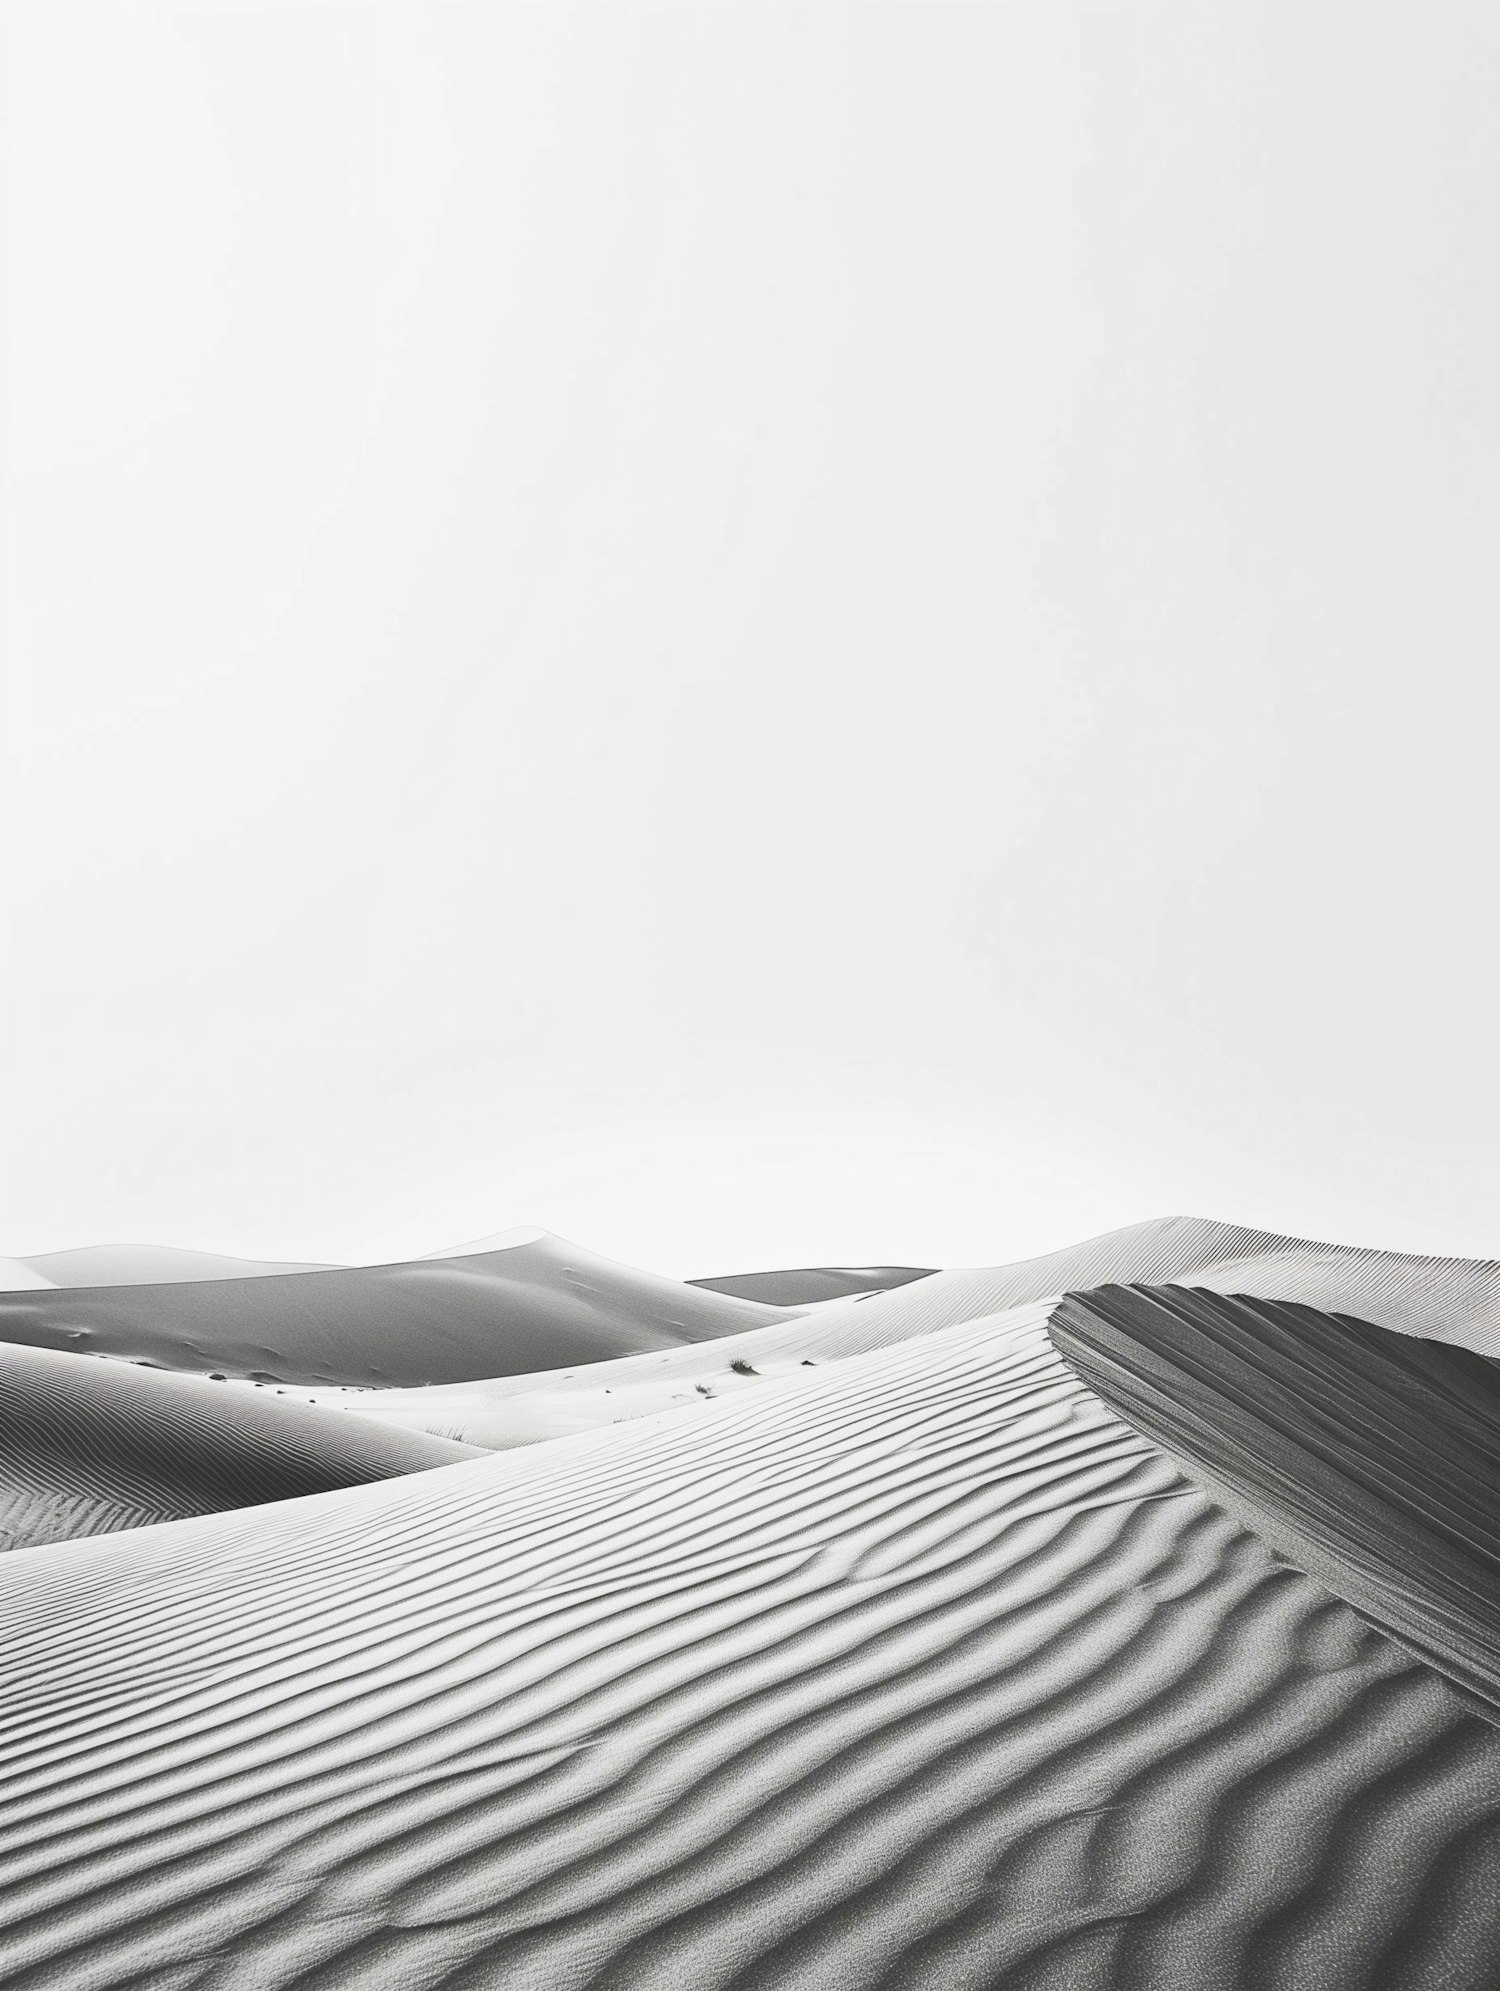 Tranquil Desert Dunes